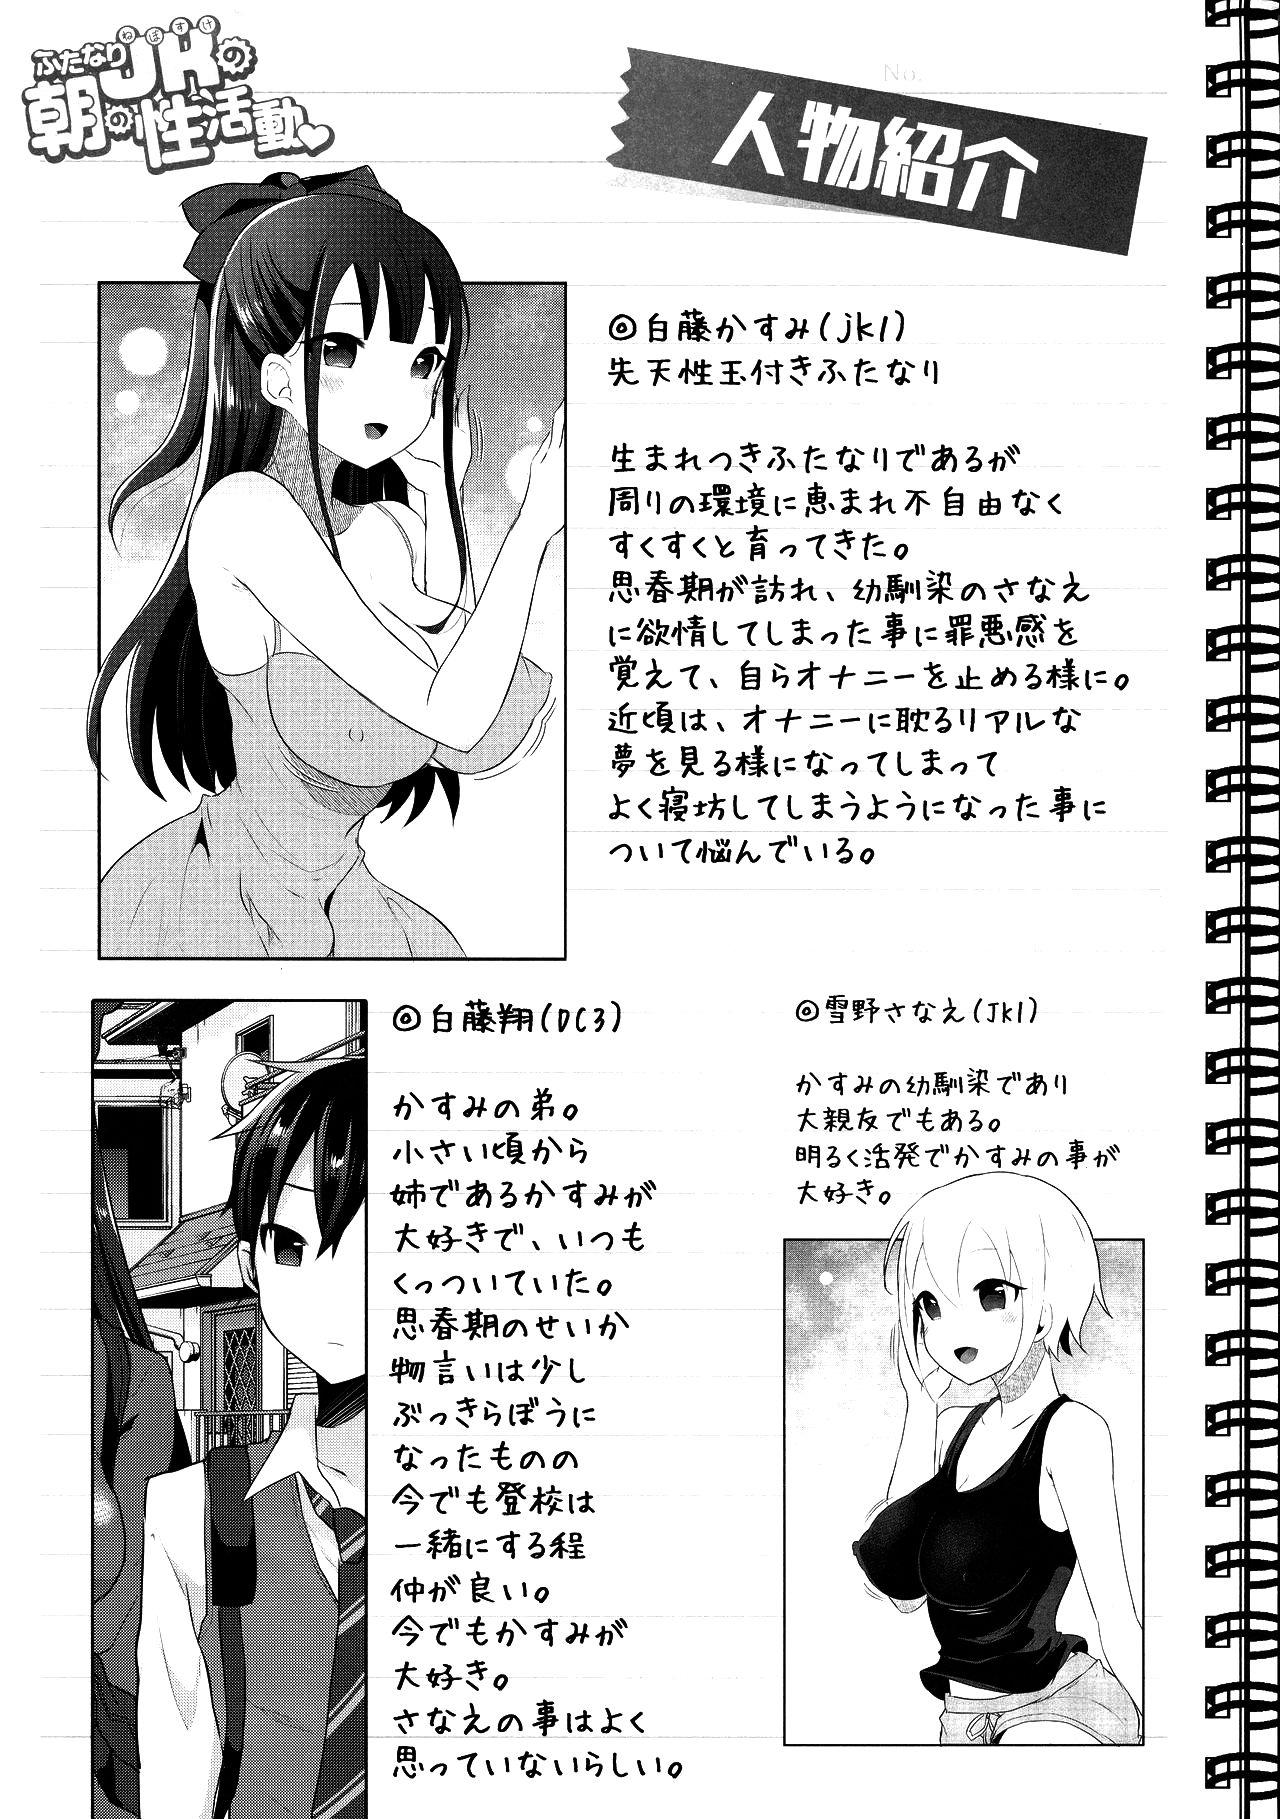 Gaypawn Futanari Nebosuke no Asa no Seikatsudo 2 - Original Namorada - Page 4